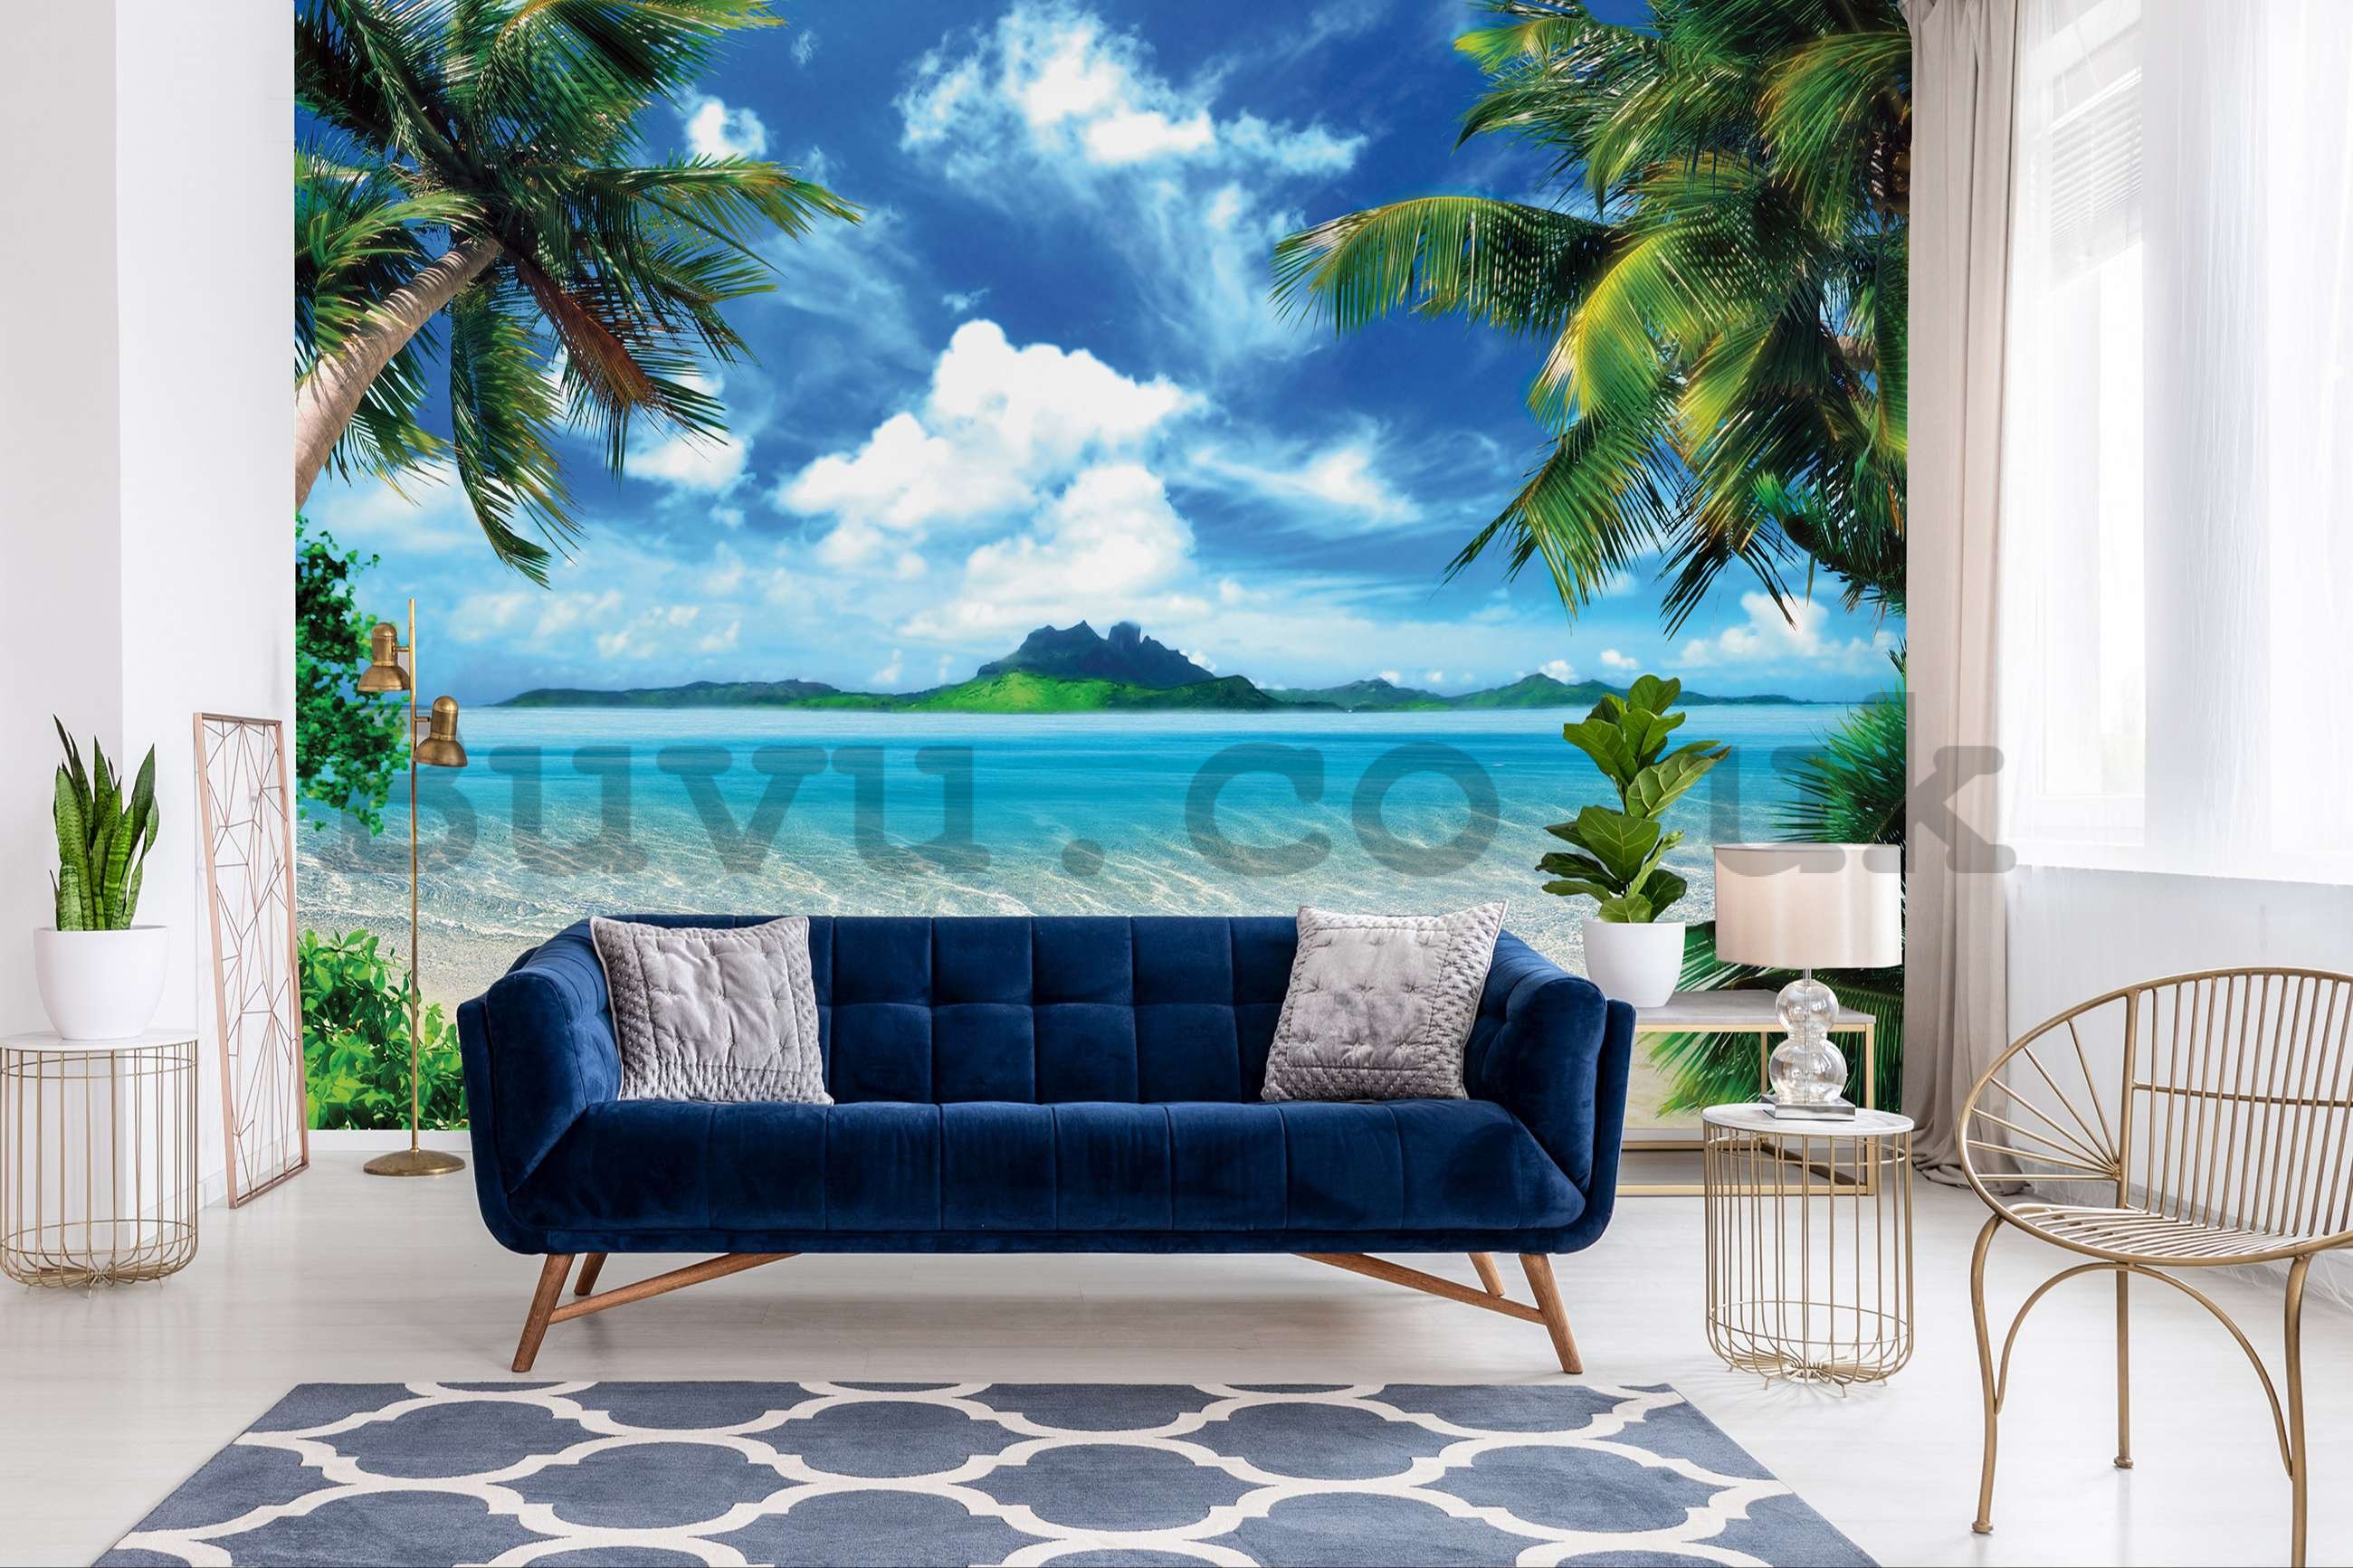 Wall mural vlies: In a tropical paradise - 368x254 cm